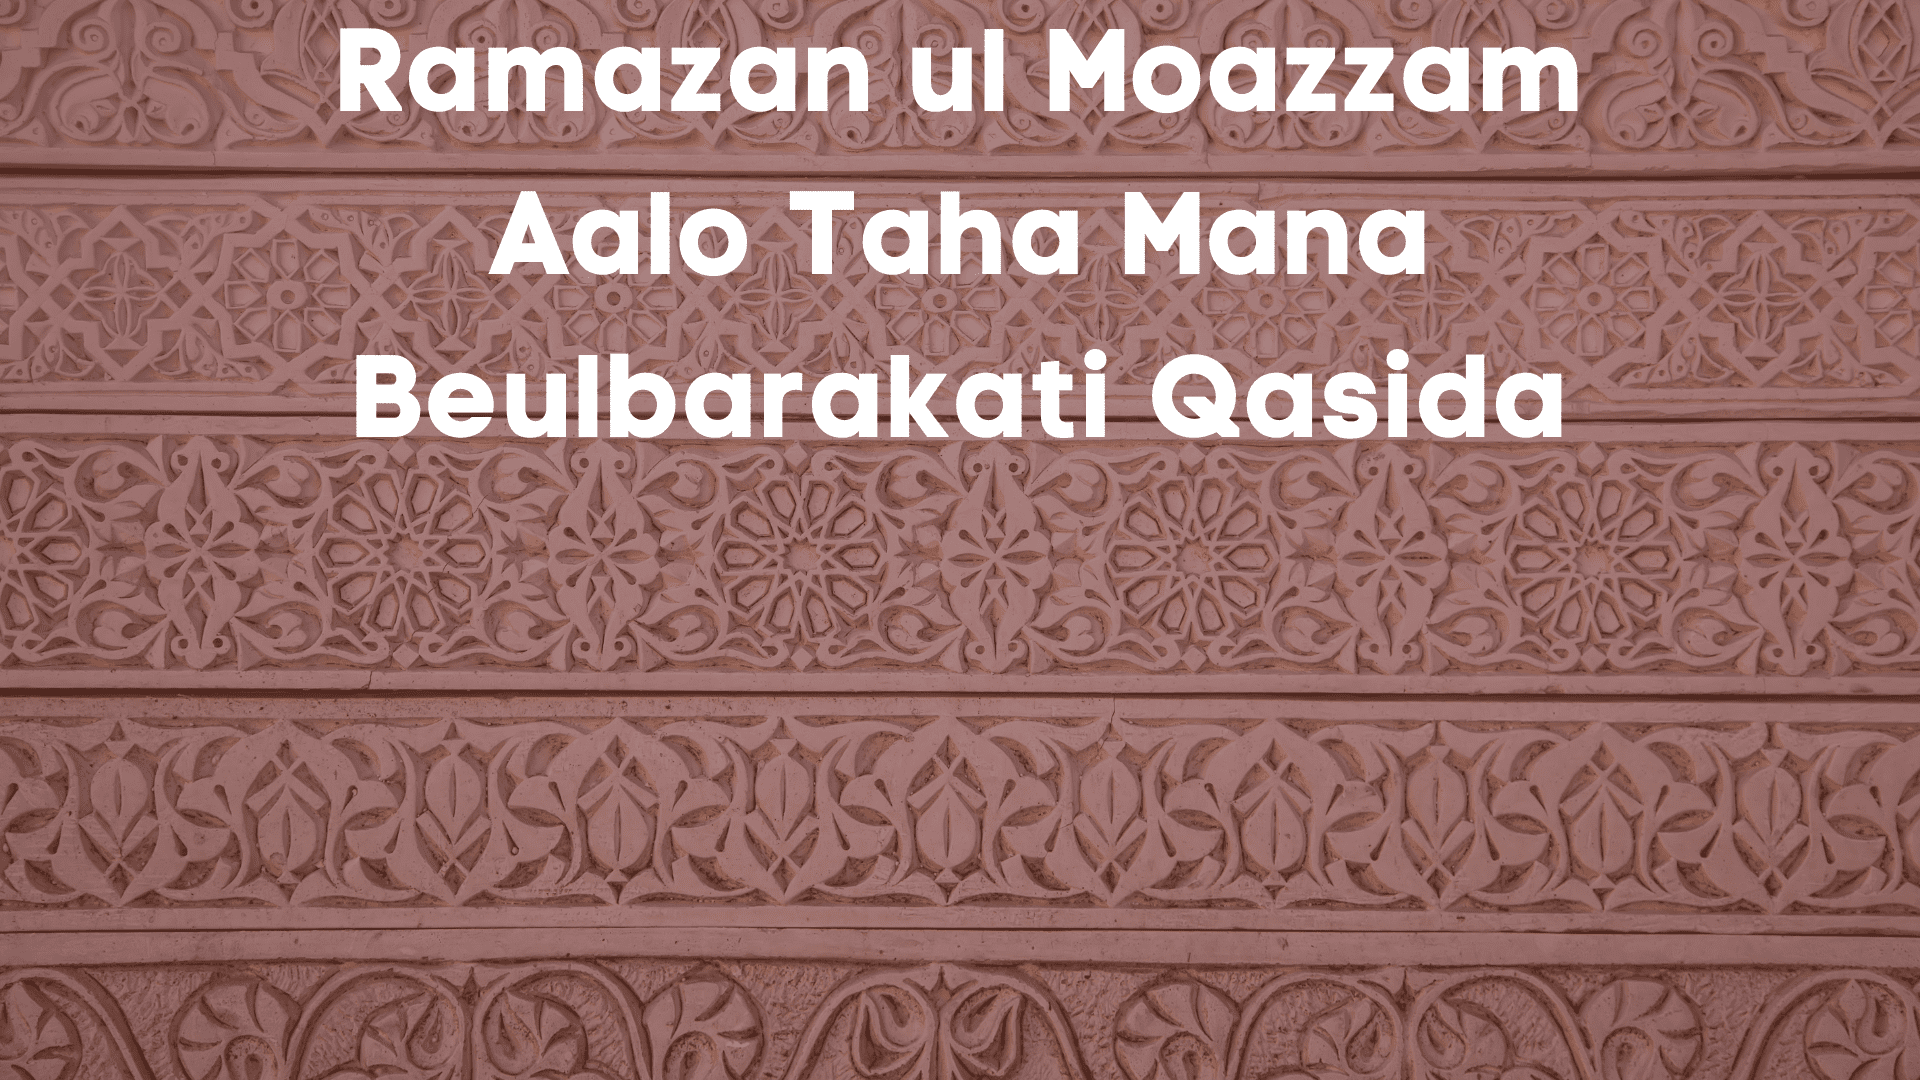 Ramazan ul Moazzam Aalo Taha Mana Beulbarakati Qasida